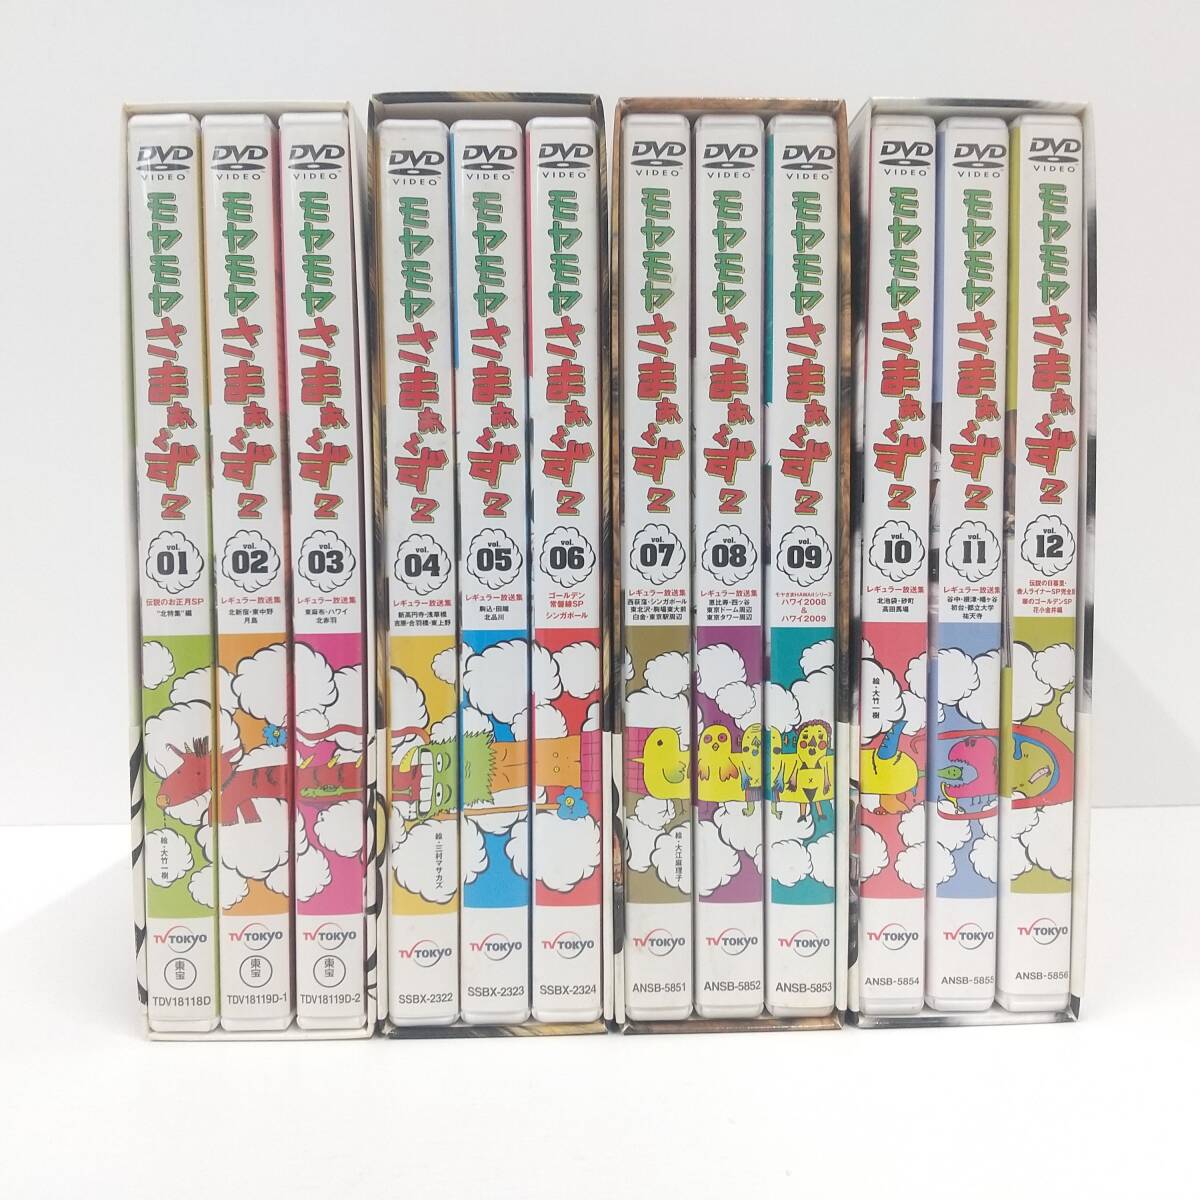 1941【DVD 12巻セット】モヤモヤさまぁ〜ず2 DVD-BOX VOL.1〜12の画像1